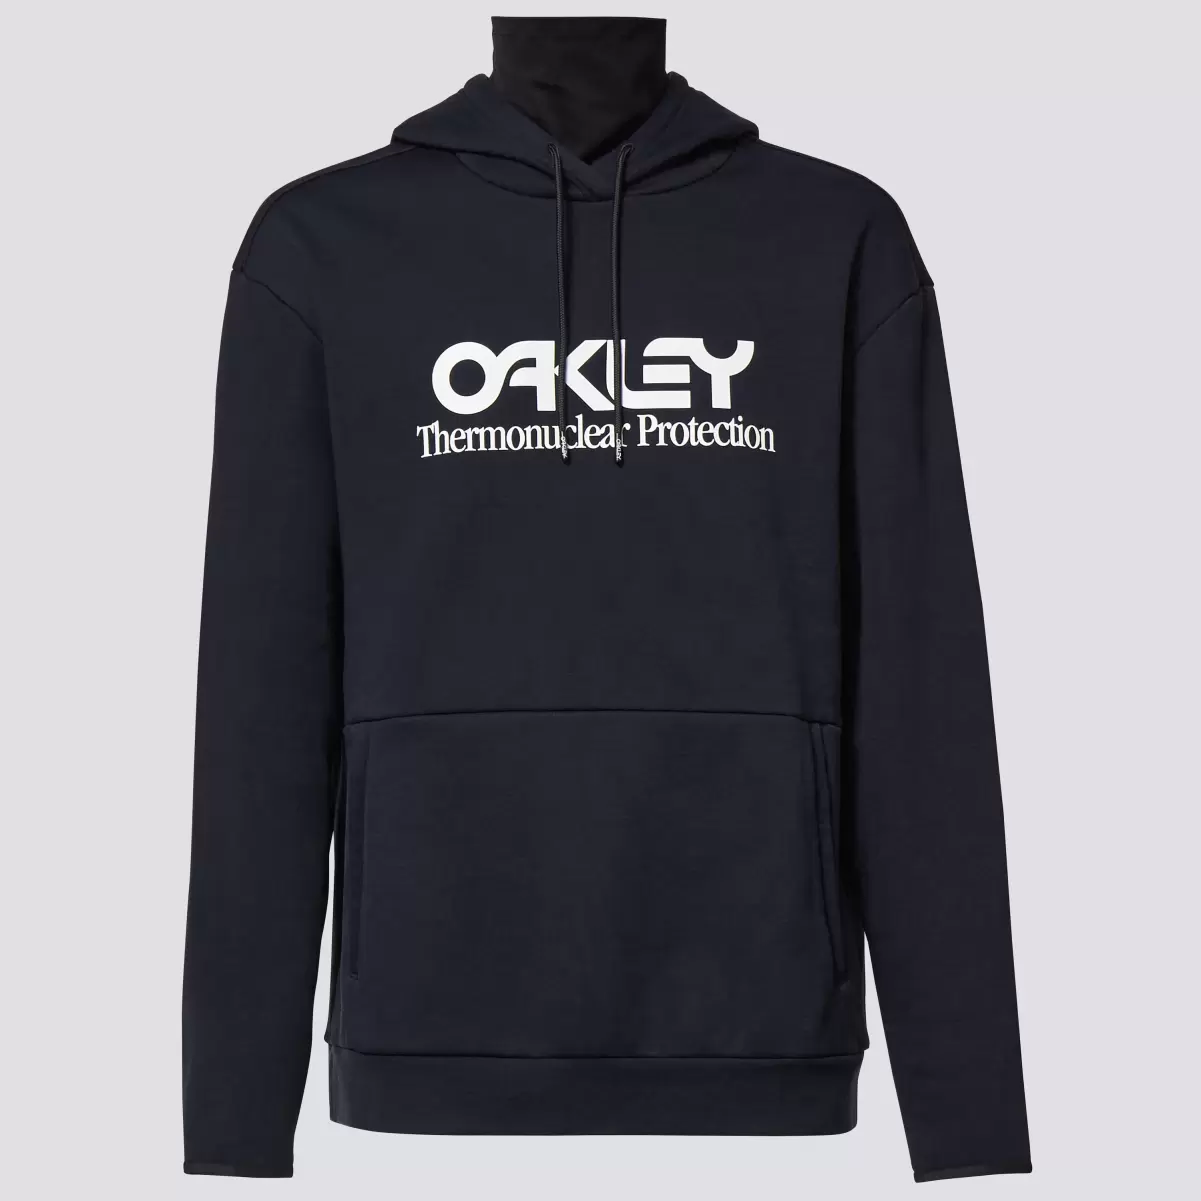 Oakley Rider Long 2.0 Hoodie Black/White Hoodies & Sweatshirts Men - 2